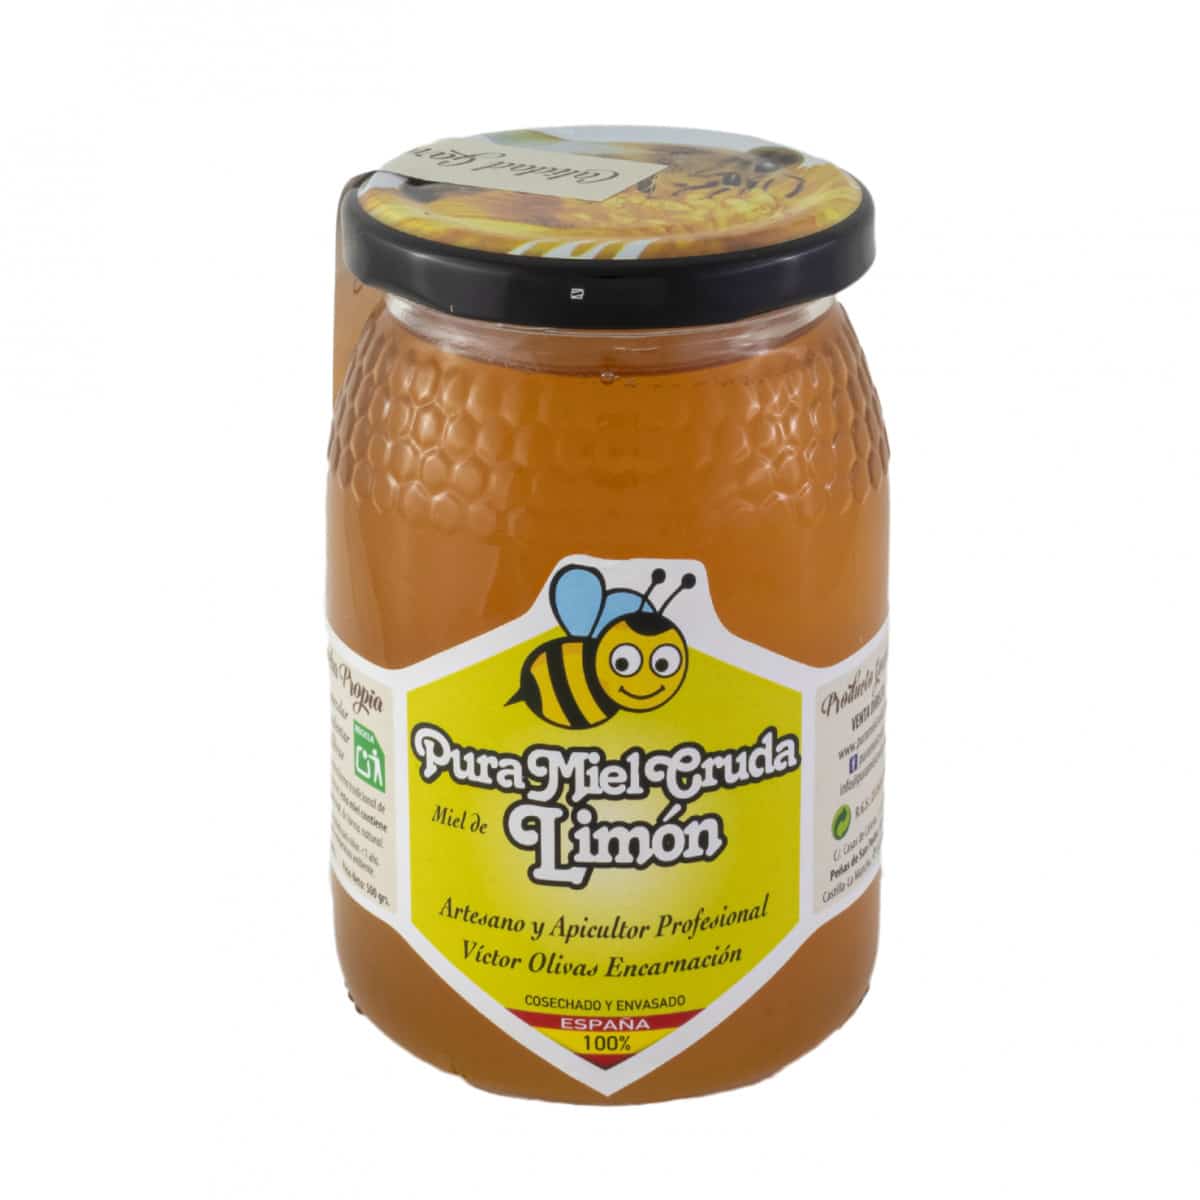 Tarro pura miel cruda limon500g